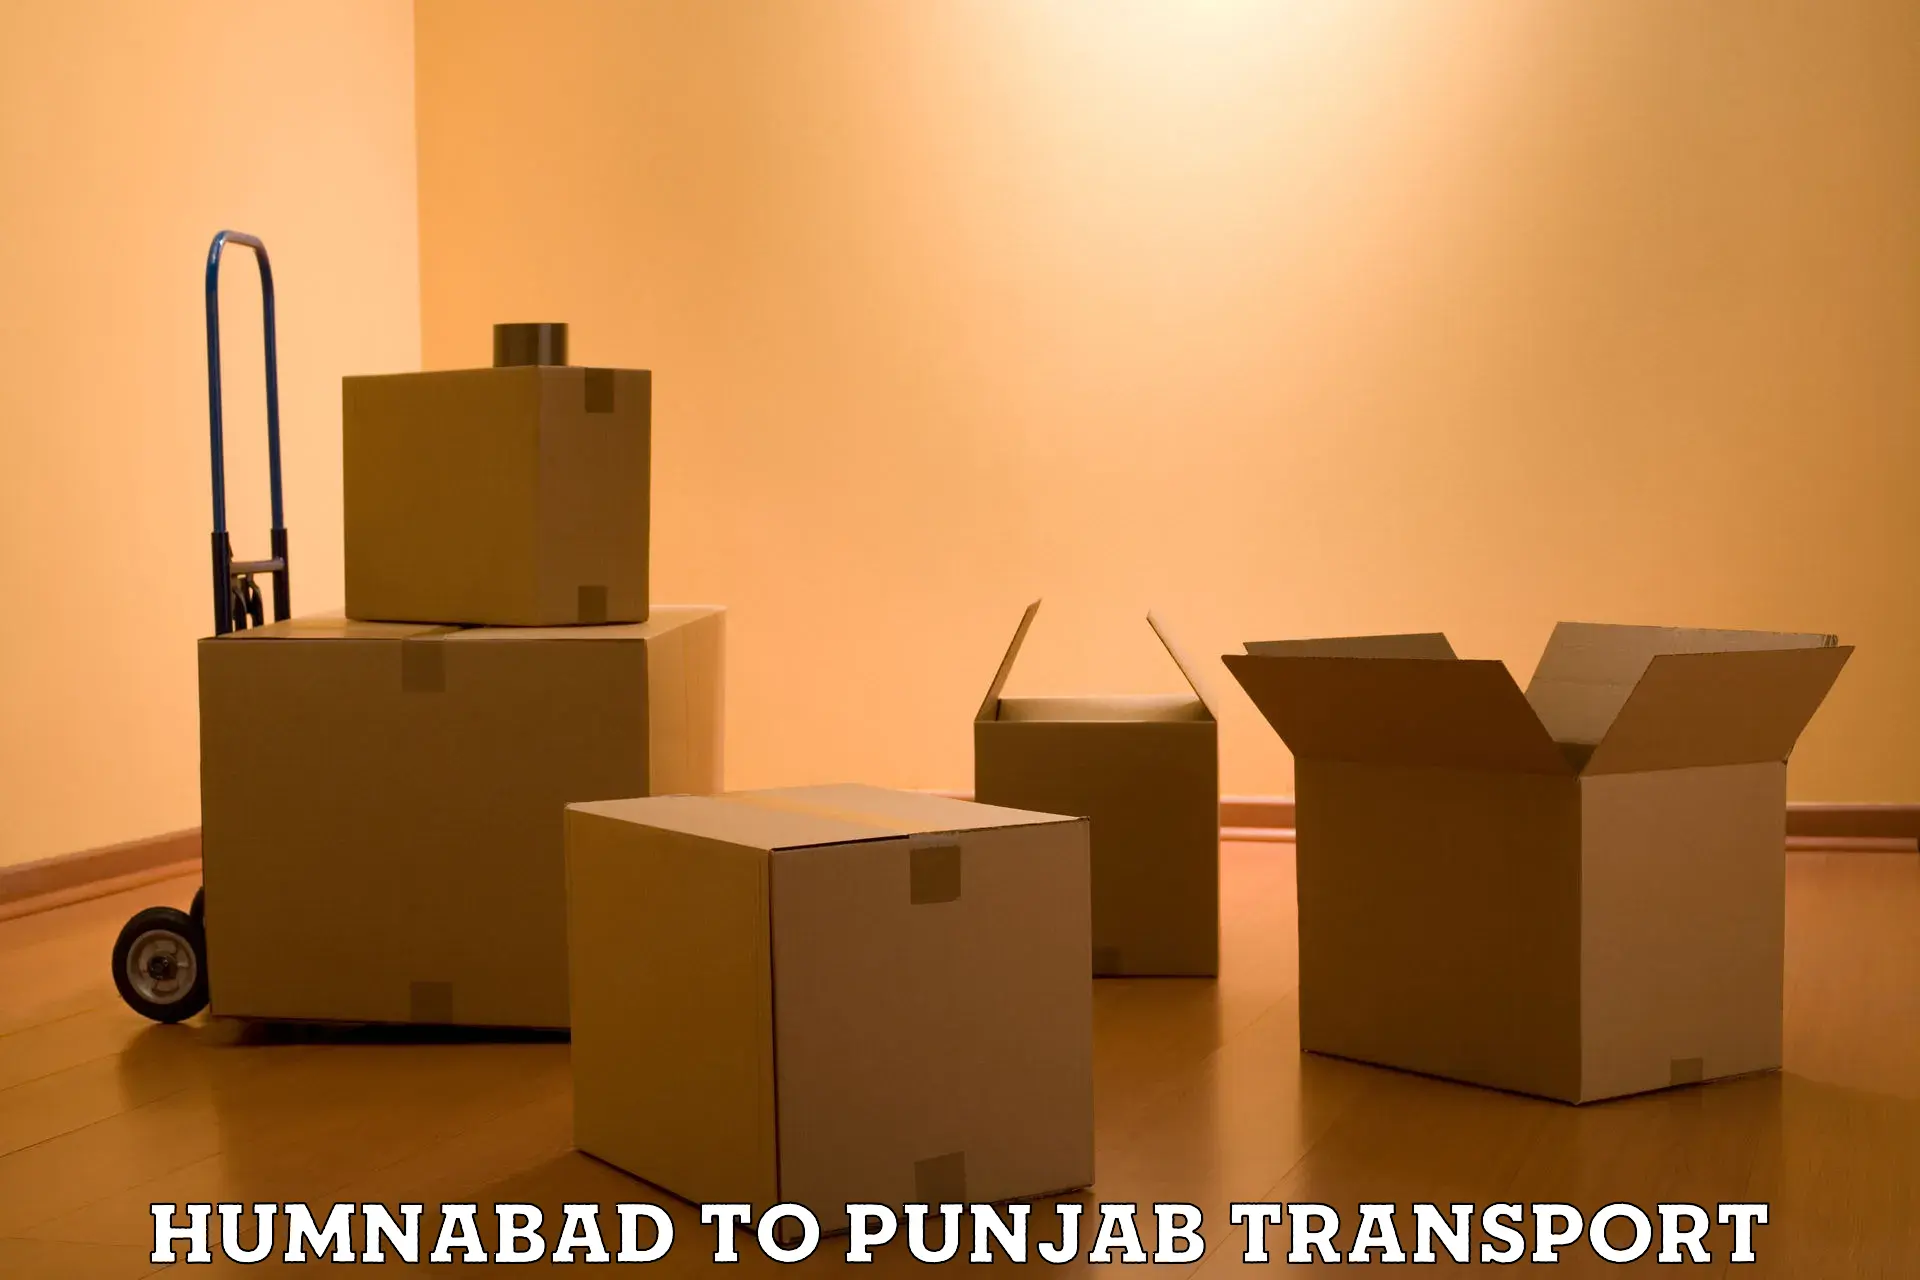 Daily parcel service transport Humnabad to Kotkapura